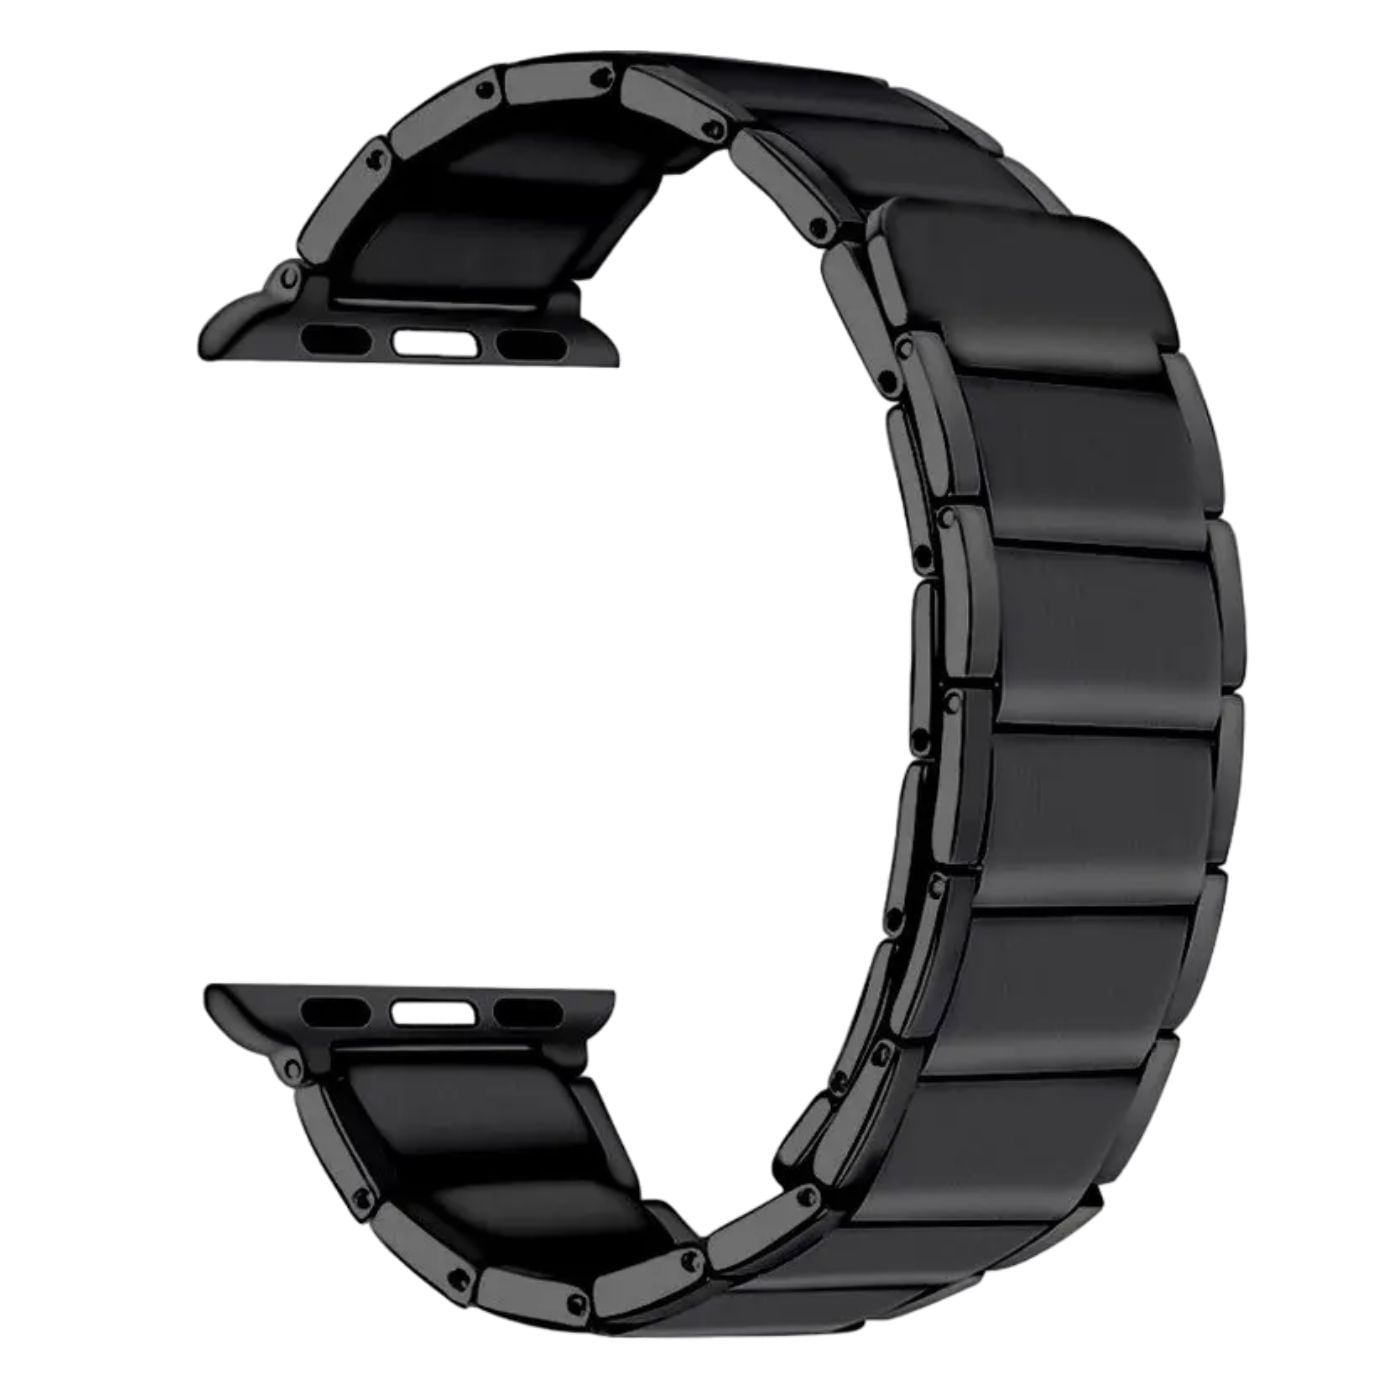 Correa para Apple watch y Smart watch de Acero Inoxidable Chain Two Section Color Negro